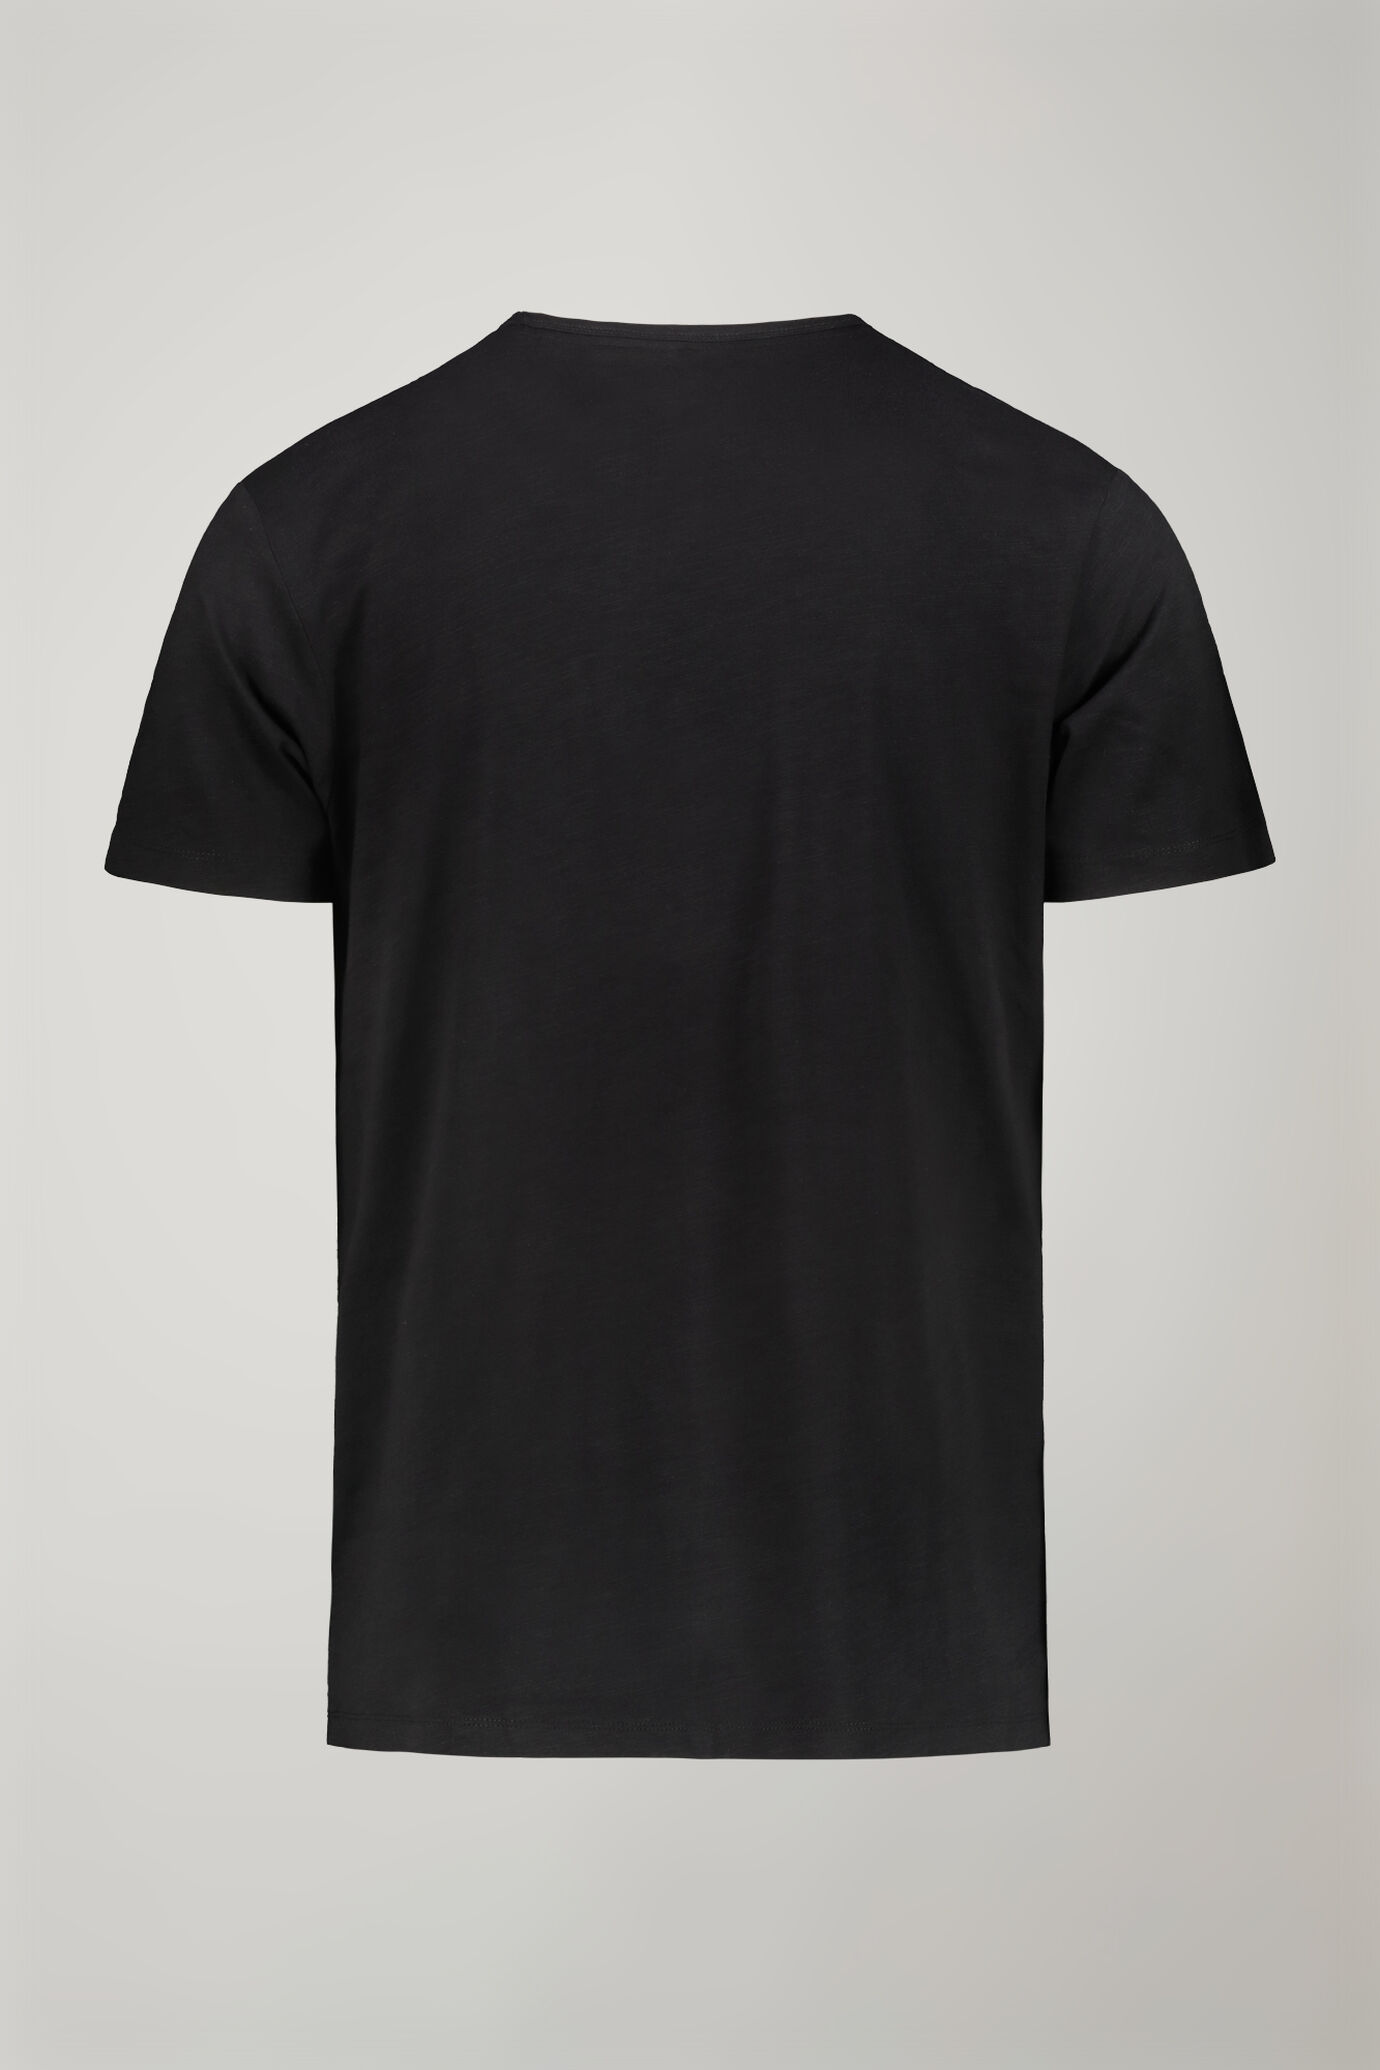 Men’s v-neck t-shirt 100% cotton flamed effect regular fit image number 5